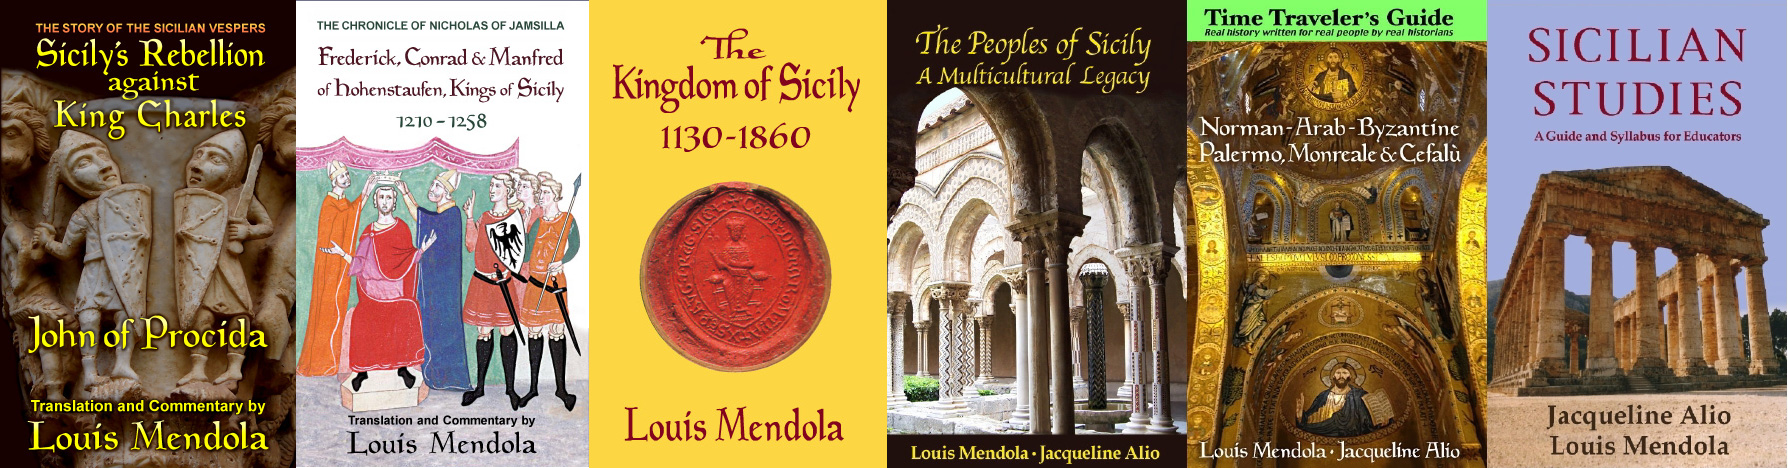 Få Kingdom of the Two Sicilies af Louis Mendola som e-bog i ePub